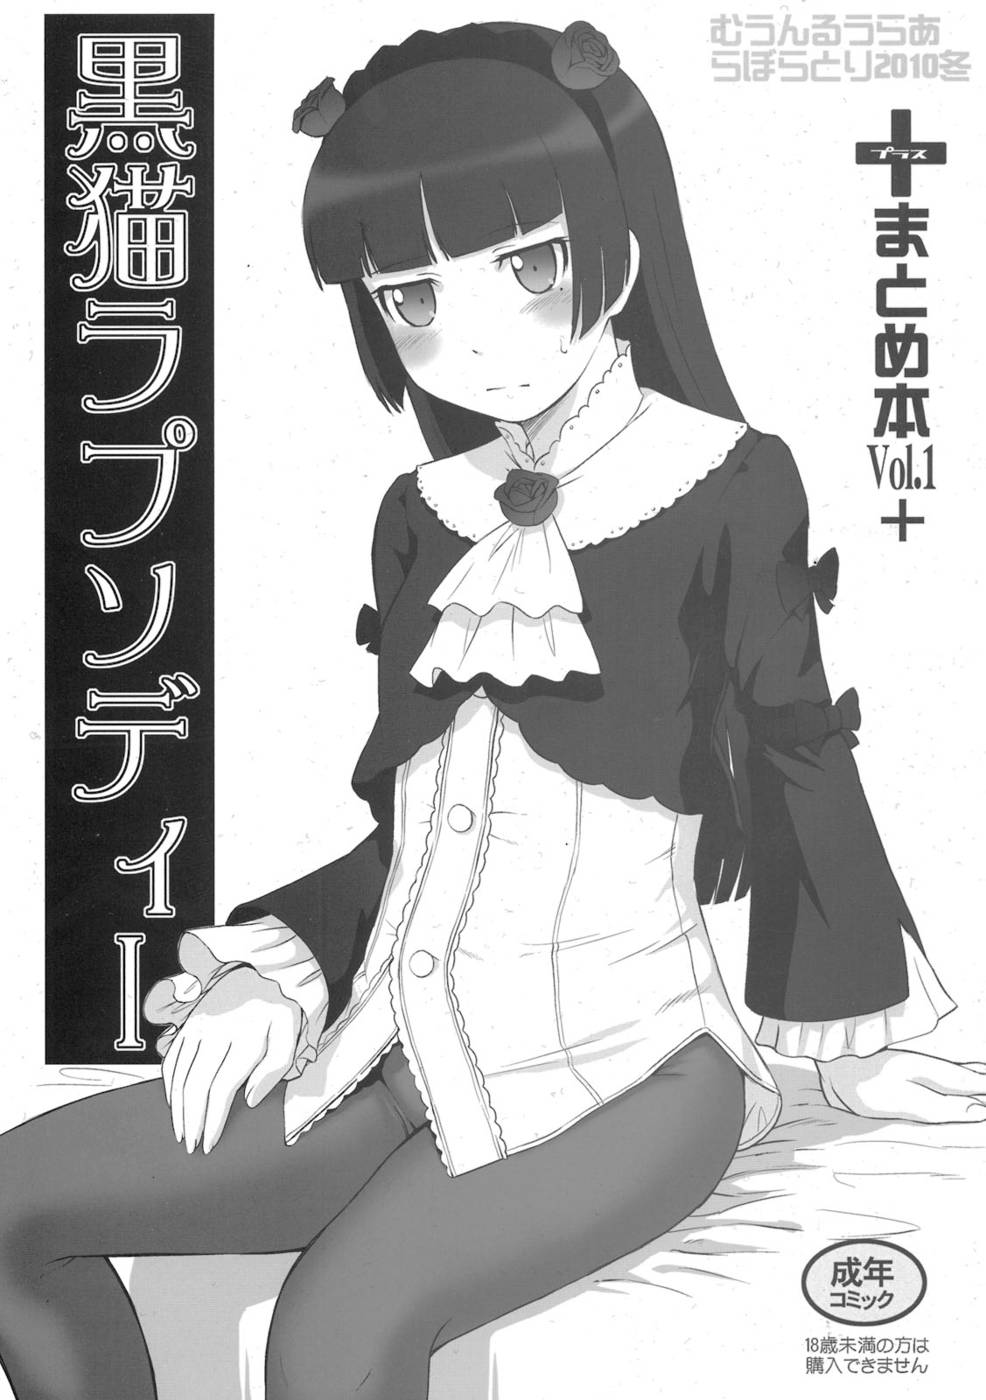 Hentai Manga Comic-Kuroneko Rhapsody I-Read-1